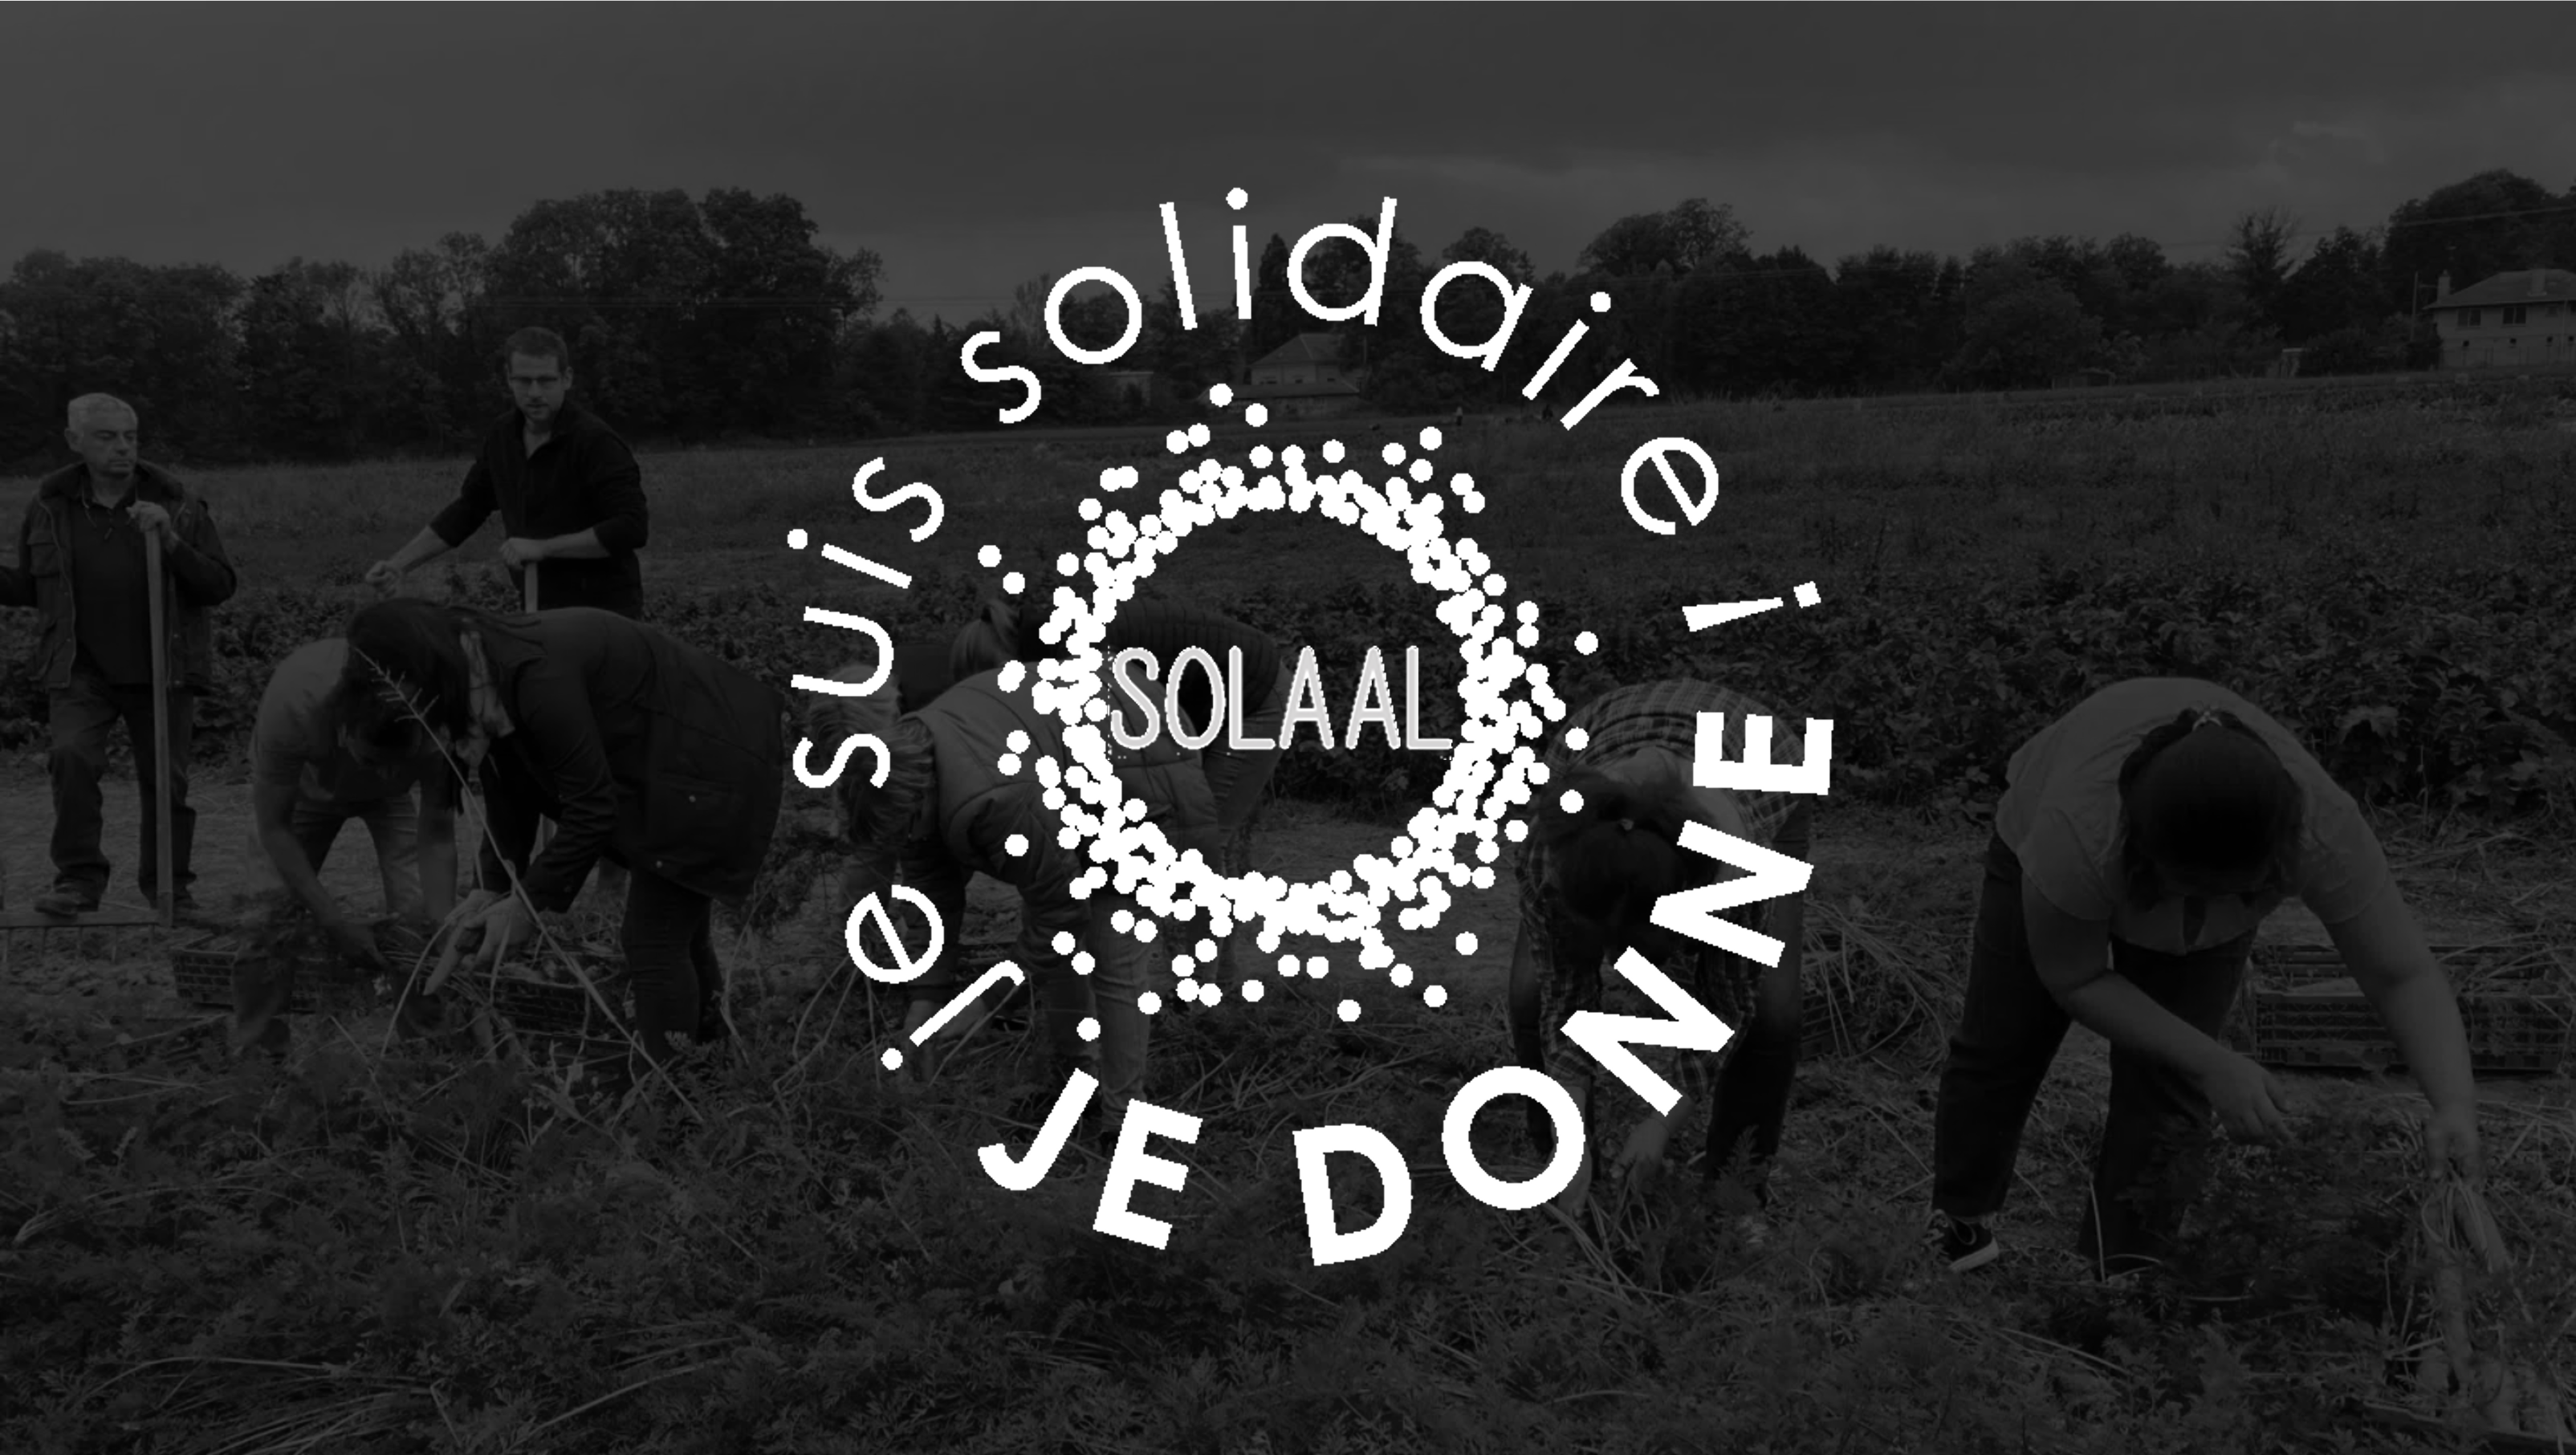 Seiko Optical France soutient l'association SOLAAL et sensibilise ses collaborateurs à mieux consommer